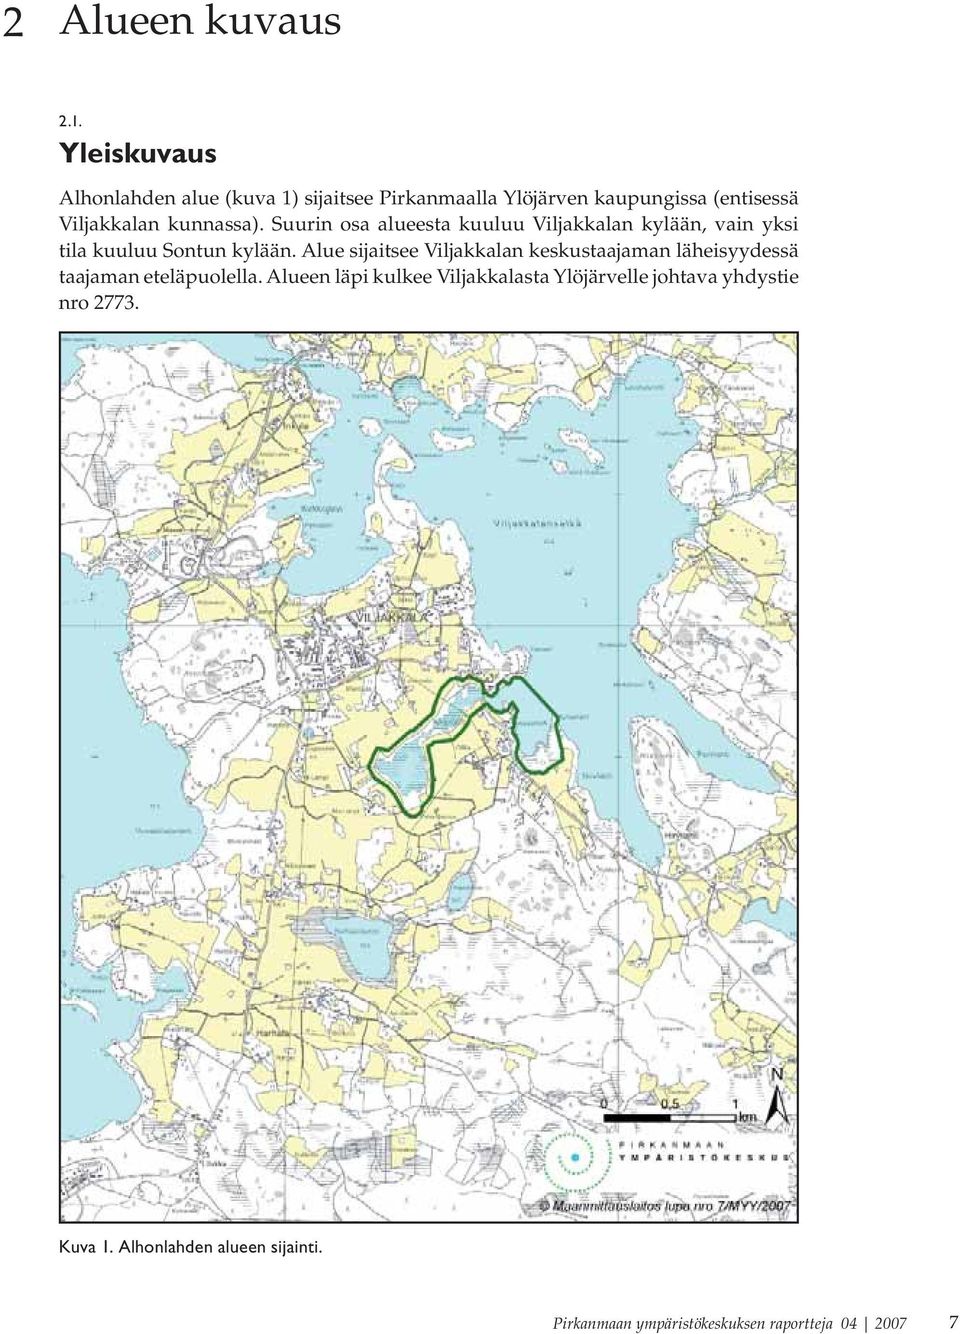 Suurin osa alueesta kuuluu Viljakkalan kylään, vain yksi tila kuuluu Sontun kylään.